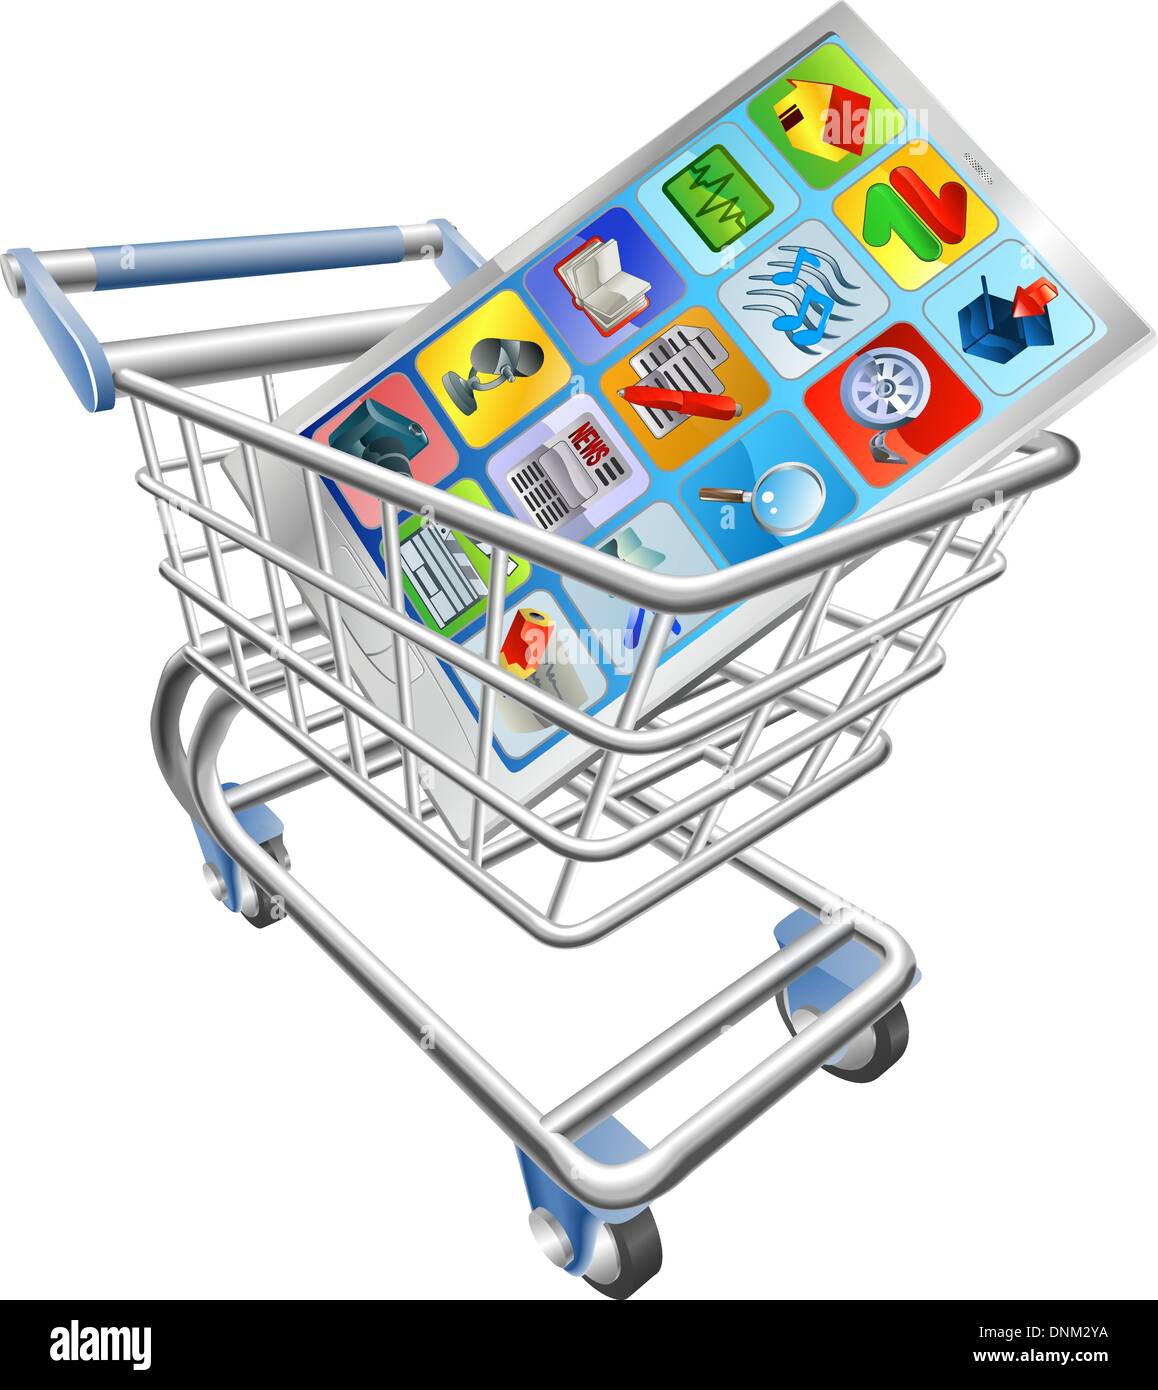 Une illustration d'une smart mobile phone or tablet PC dans votre panier trolley Illustration de Vecteur